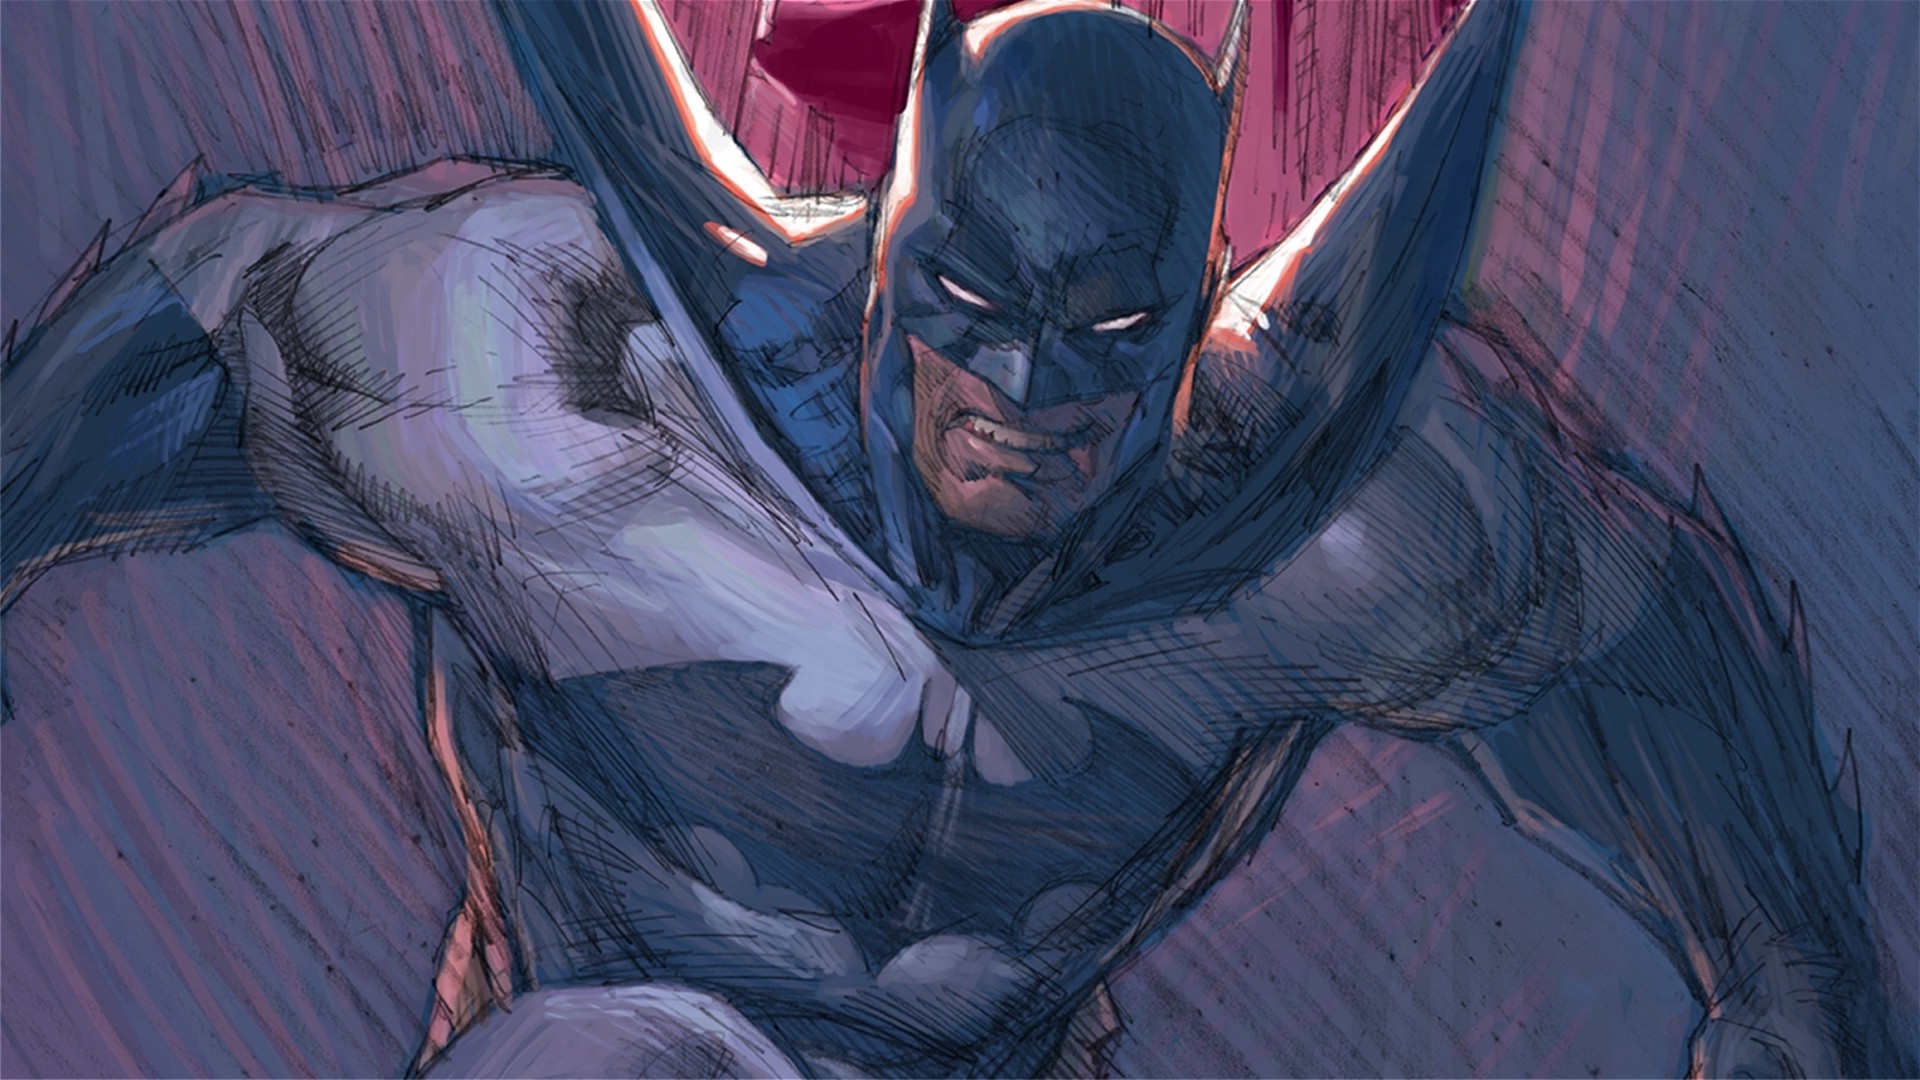 bruce wayne wallpaper,batman,fictional character,superhero,justice league,cg artwork